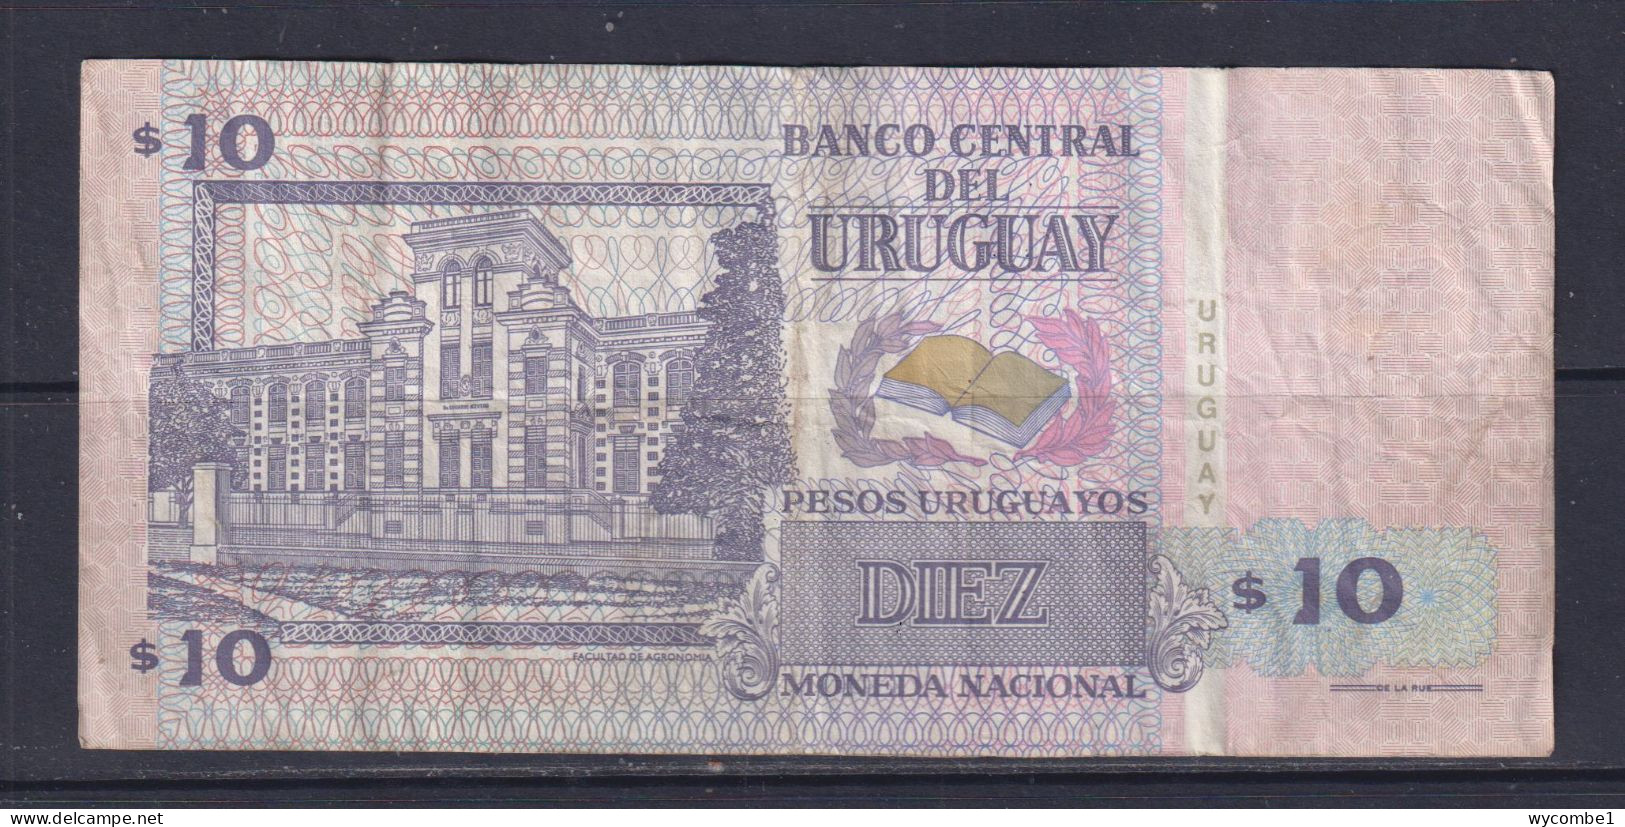 URUGUAY - 1998 10 Pesos Circulated Banknote - Uruguay